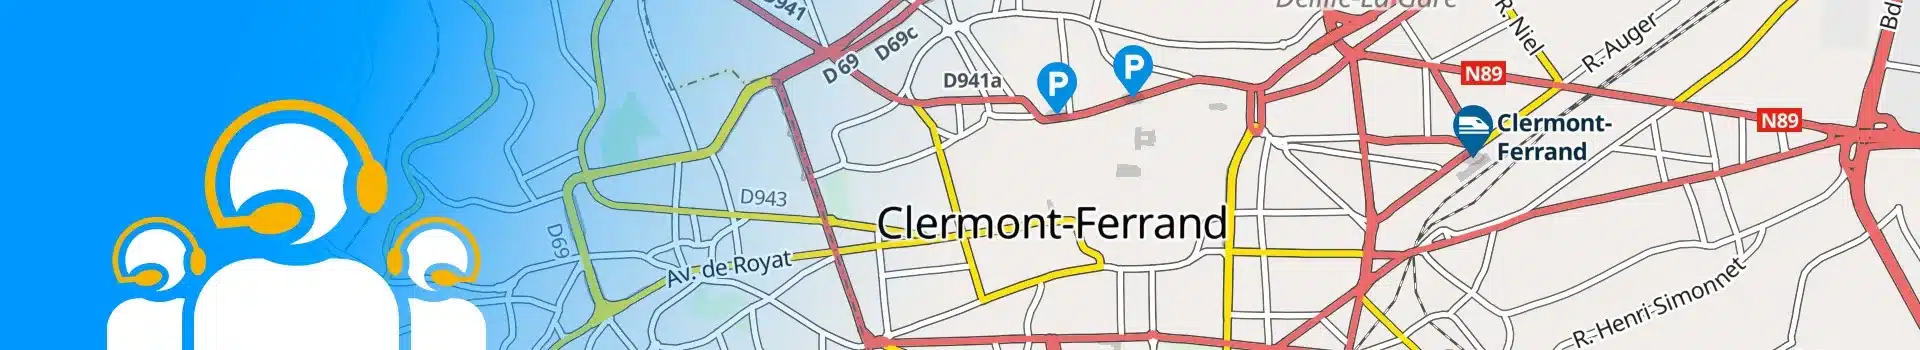 Permanence téléphonique Clermont-ferrand à proximité de la chaîne montagneuse des Puys dans le département du Puy-de-Dôme (63)